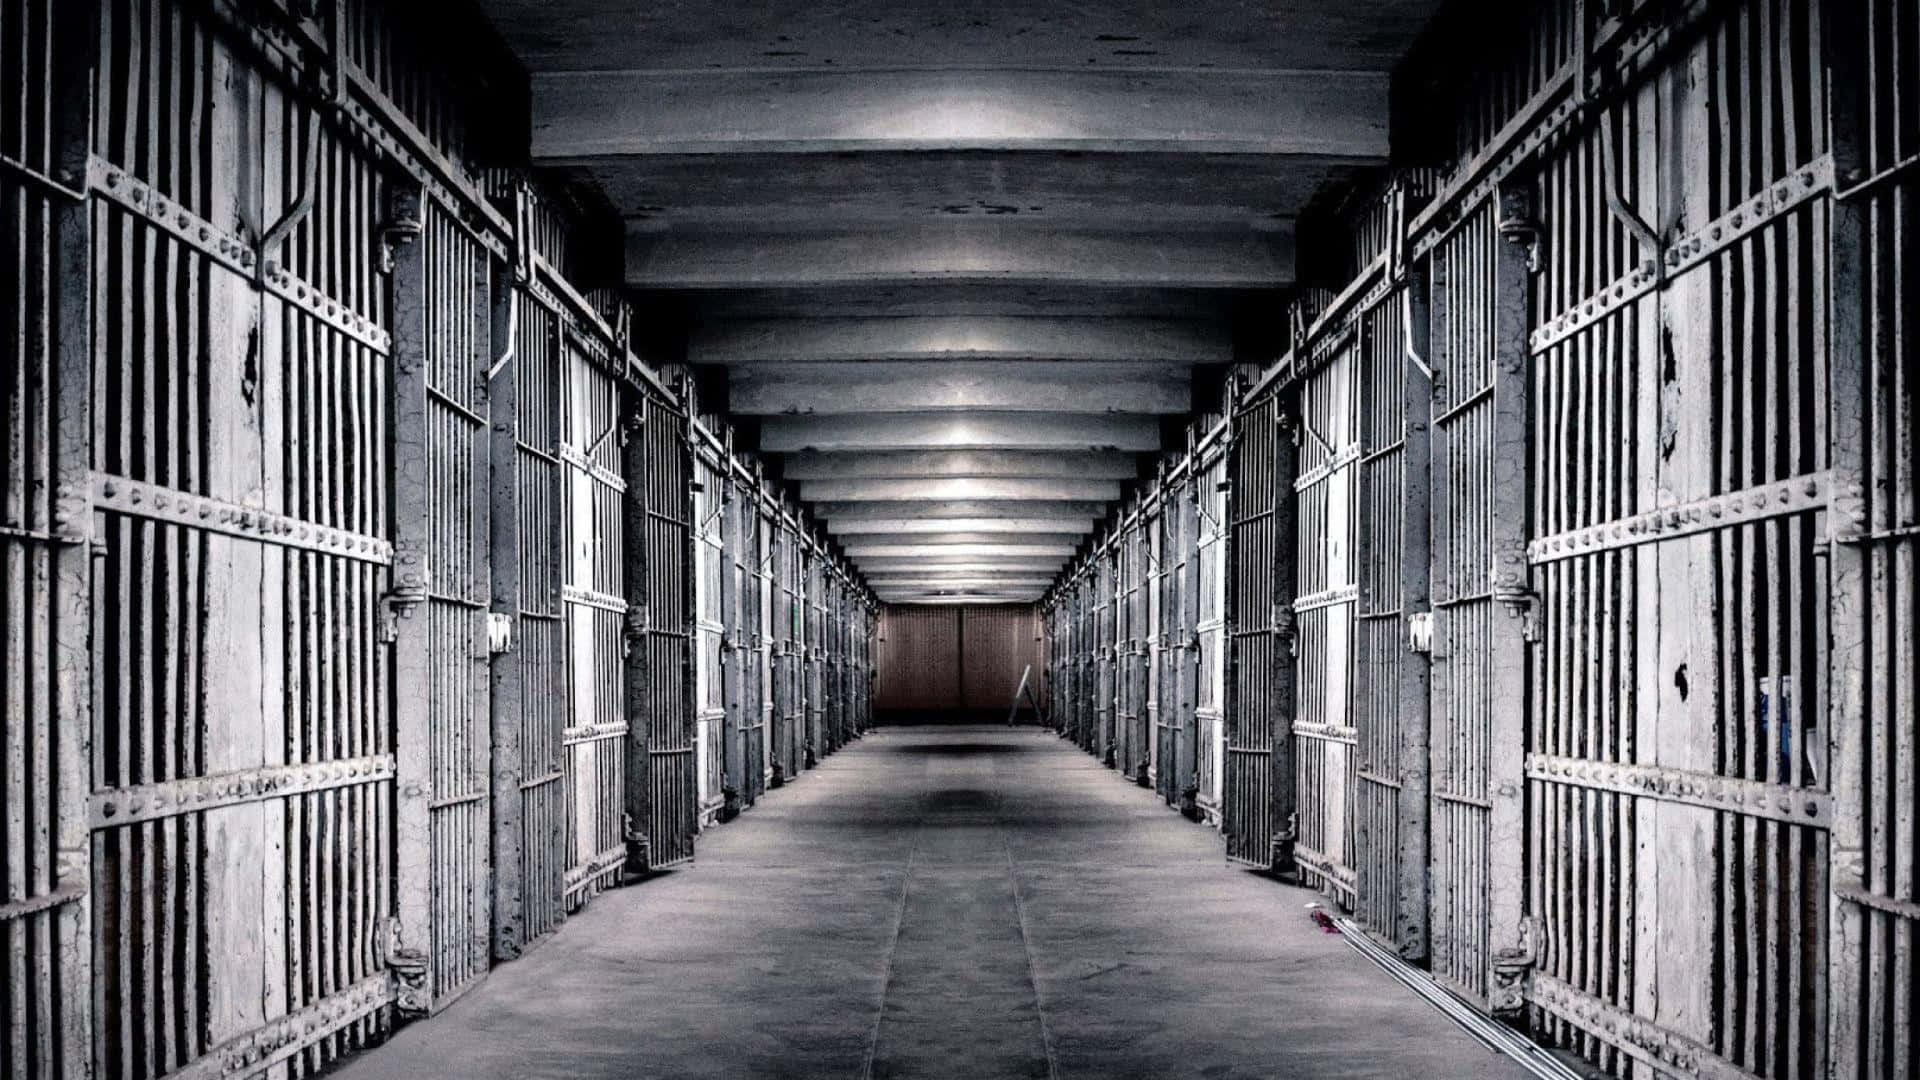 Corridoiodella Cella Di Prigione